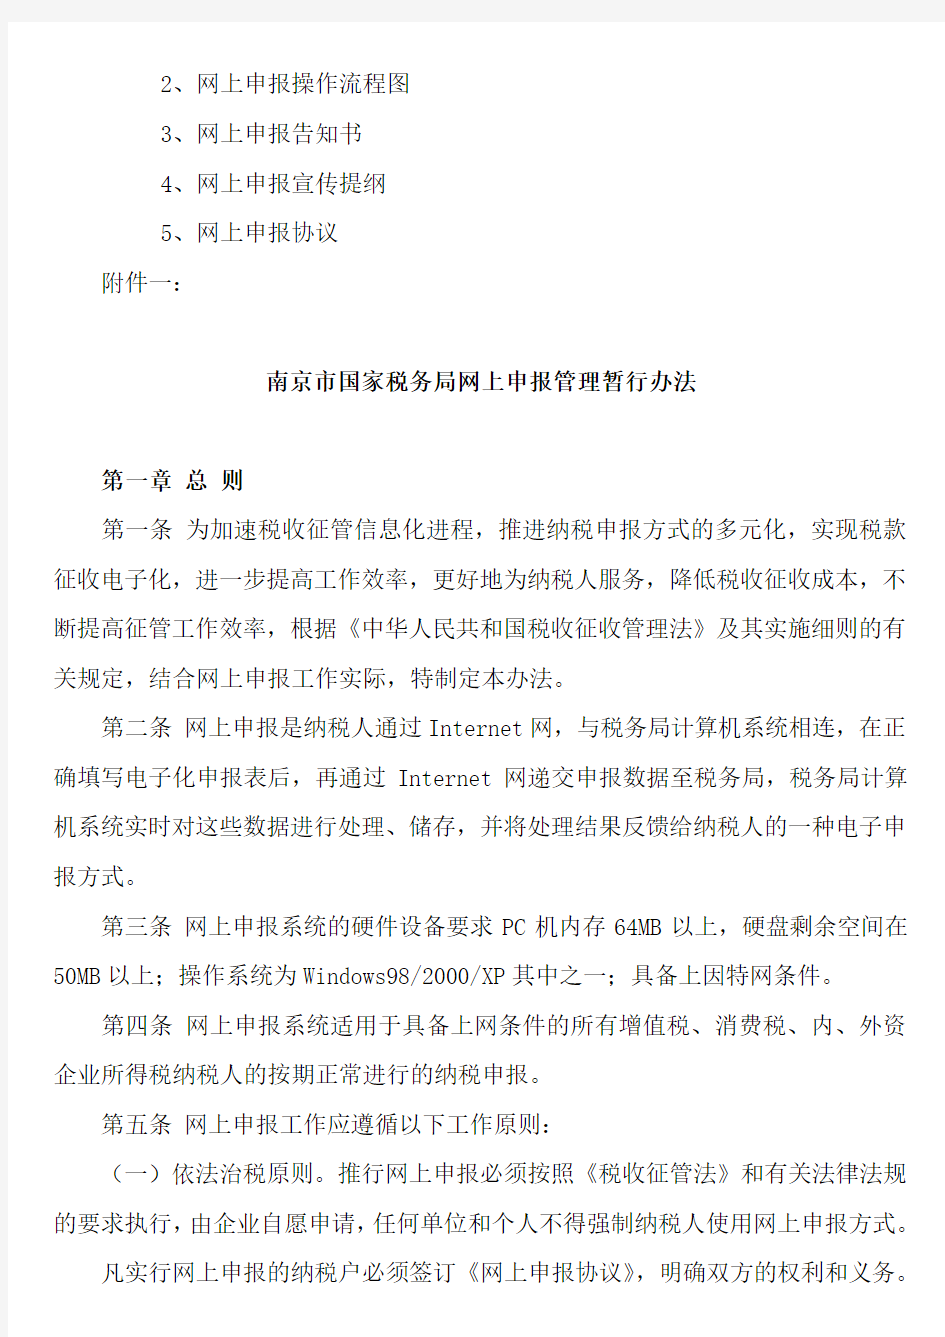 南京市国家税务局网上申报管理暂行办法